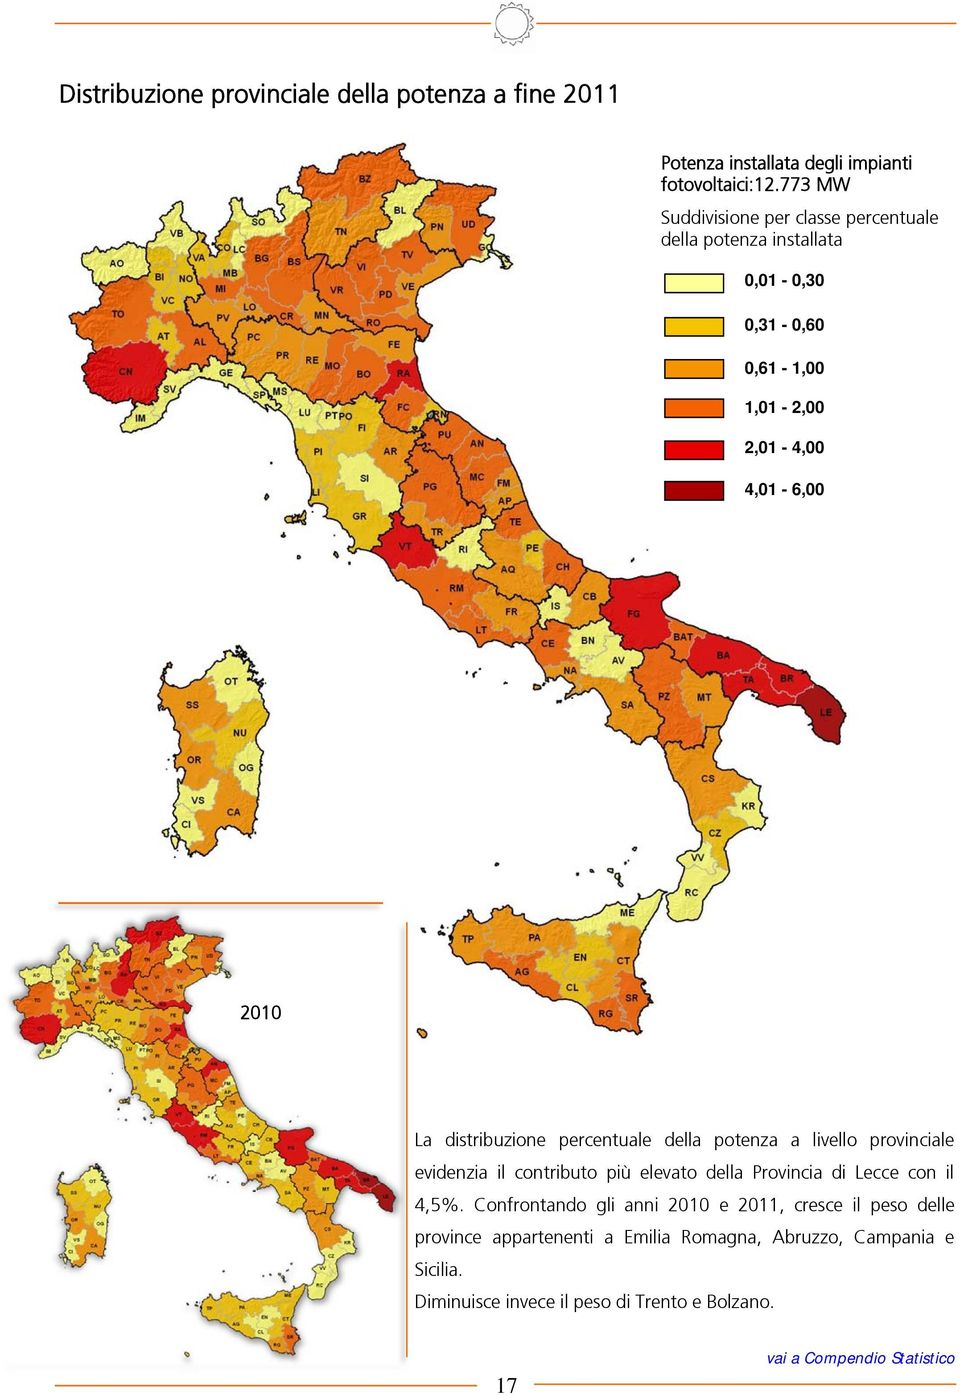 distribuzione percentuale della potenza a livello provinciale evidenzia il contributo più elevato della Provincia di Lecce con il 4,5%.